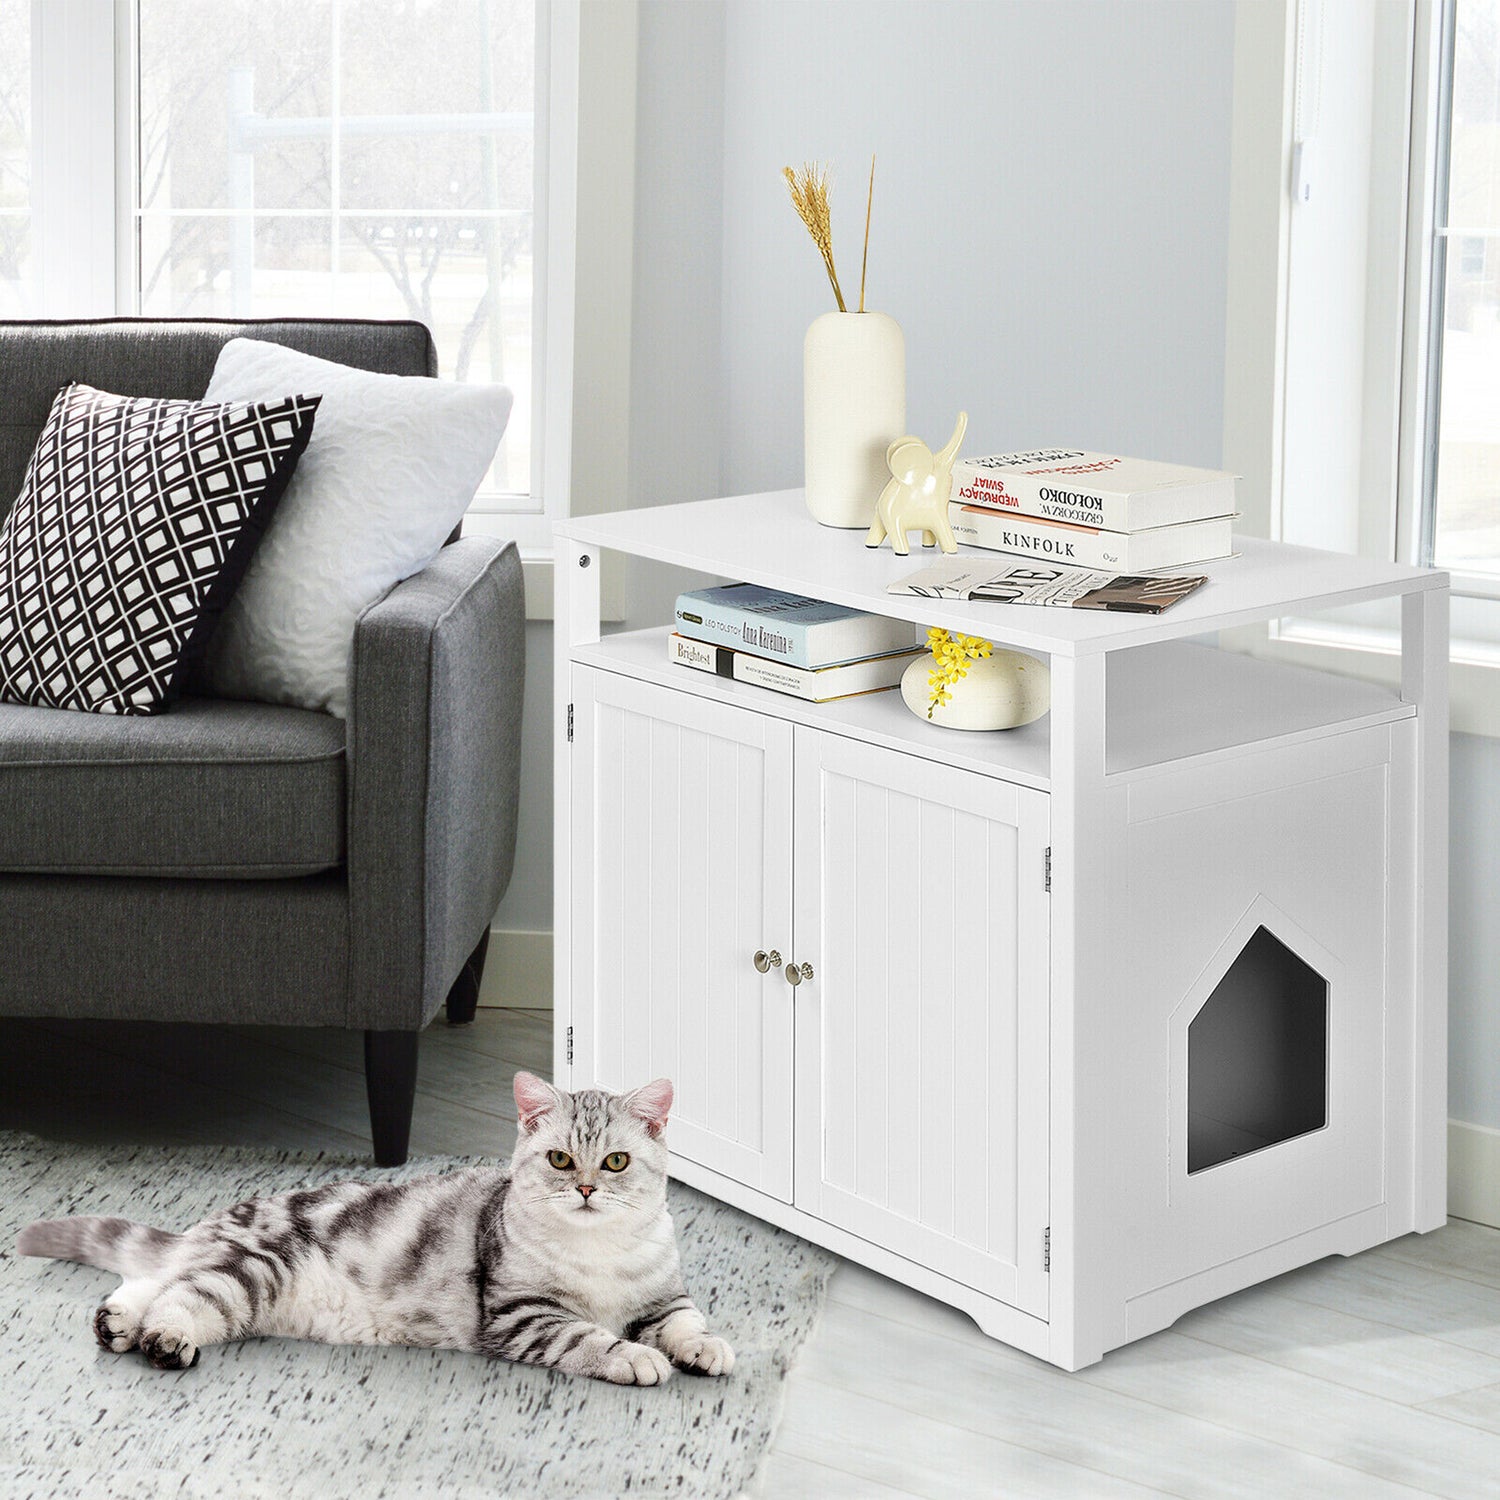 Gymax Wooden Cat Litter Box Enclosure Hidden Cat Washroom W/ Storage Layer White Animals & Pet Supplies > Pet Supplies > Cat Supplies > Cat Furniture Gymax   